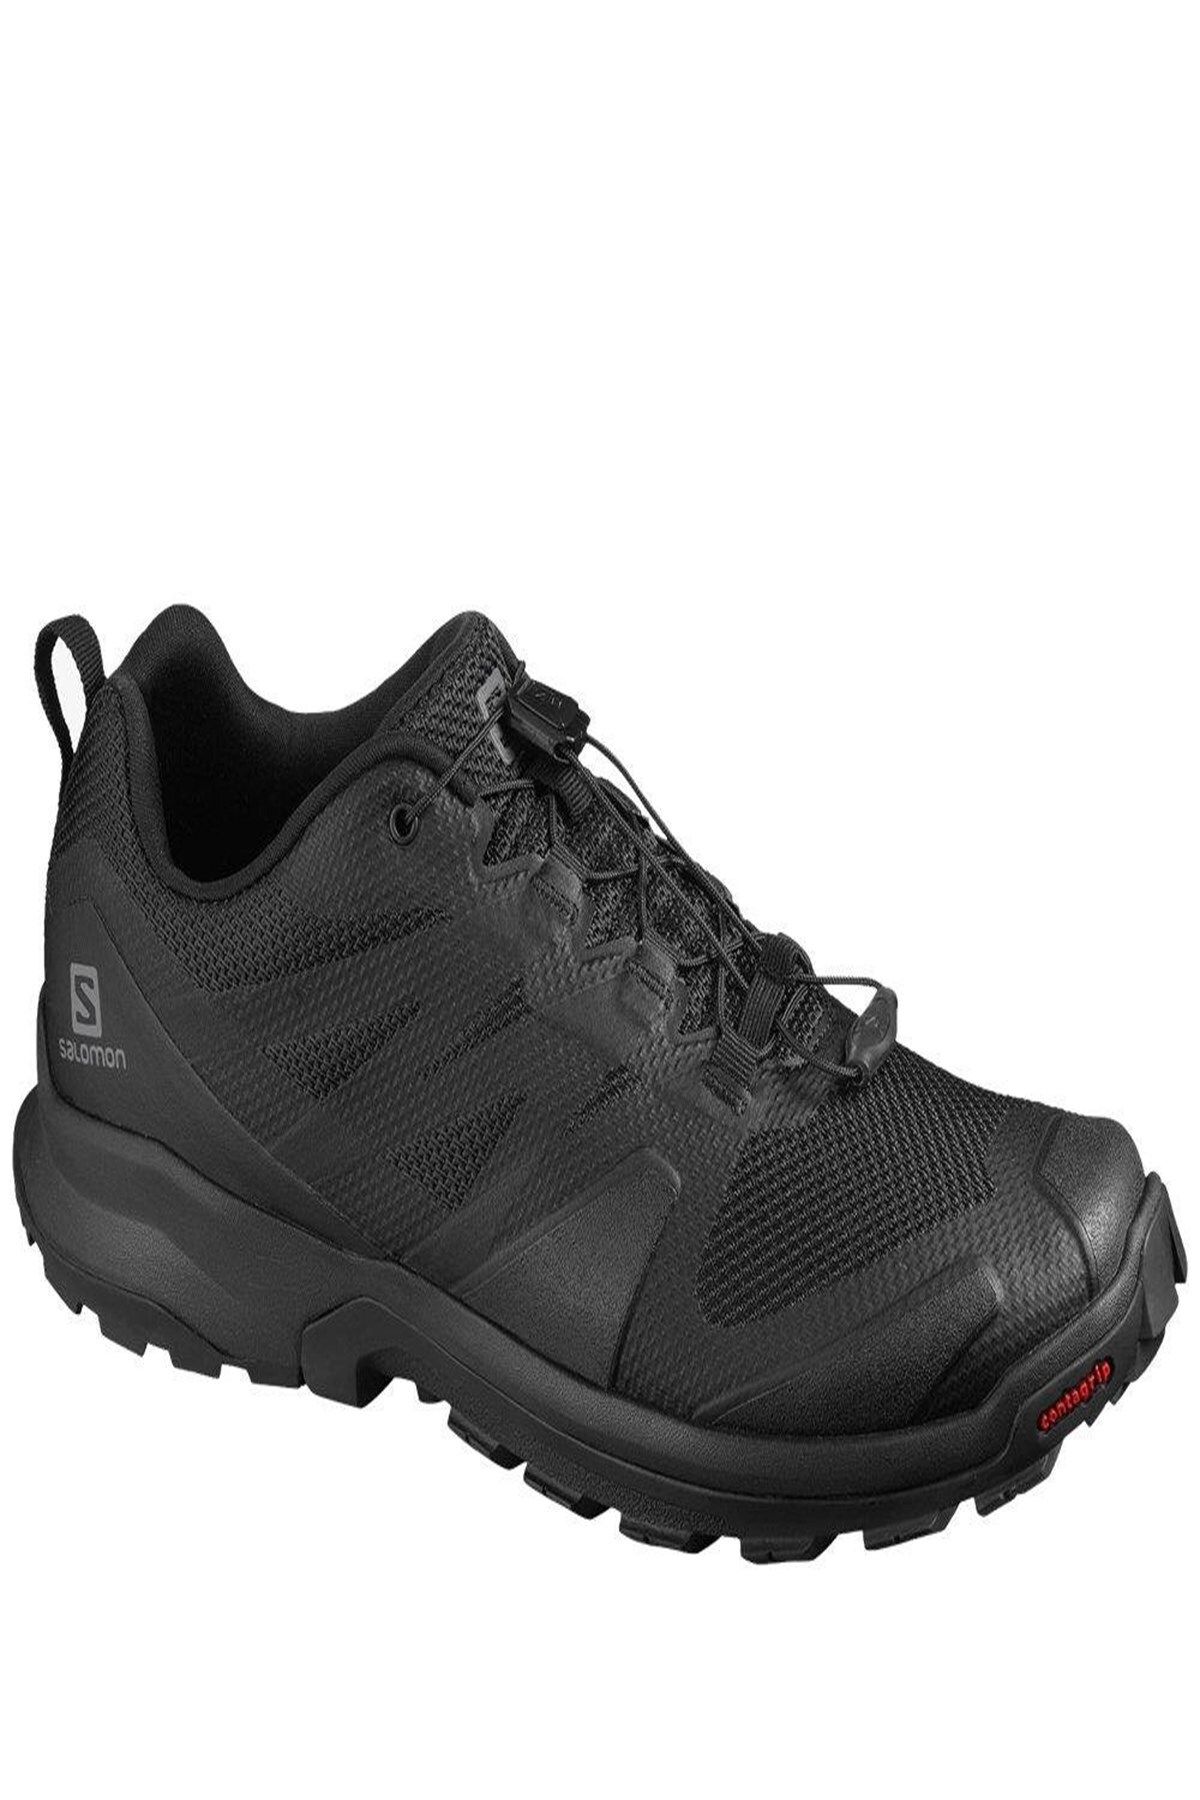 Salomon Xa Rogg L41112200 Erkek Outdoor Ayakkabı - Siyah